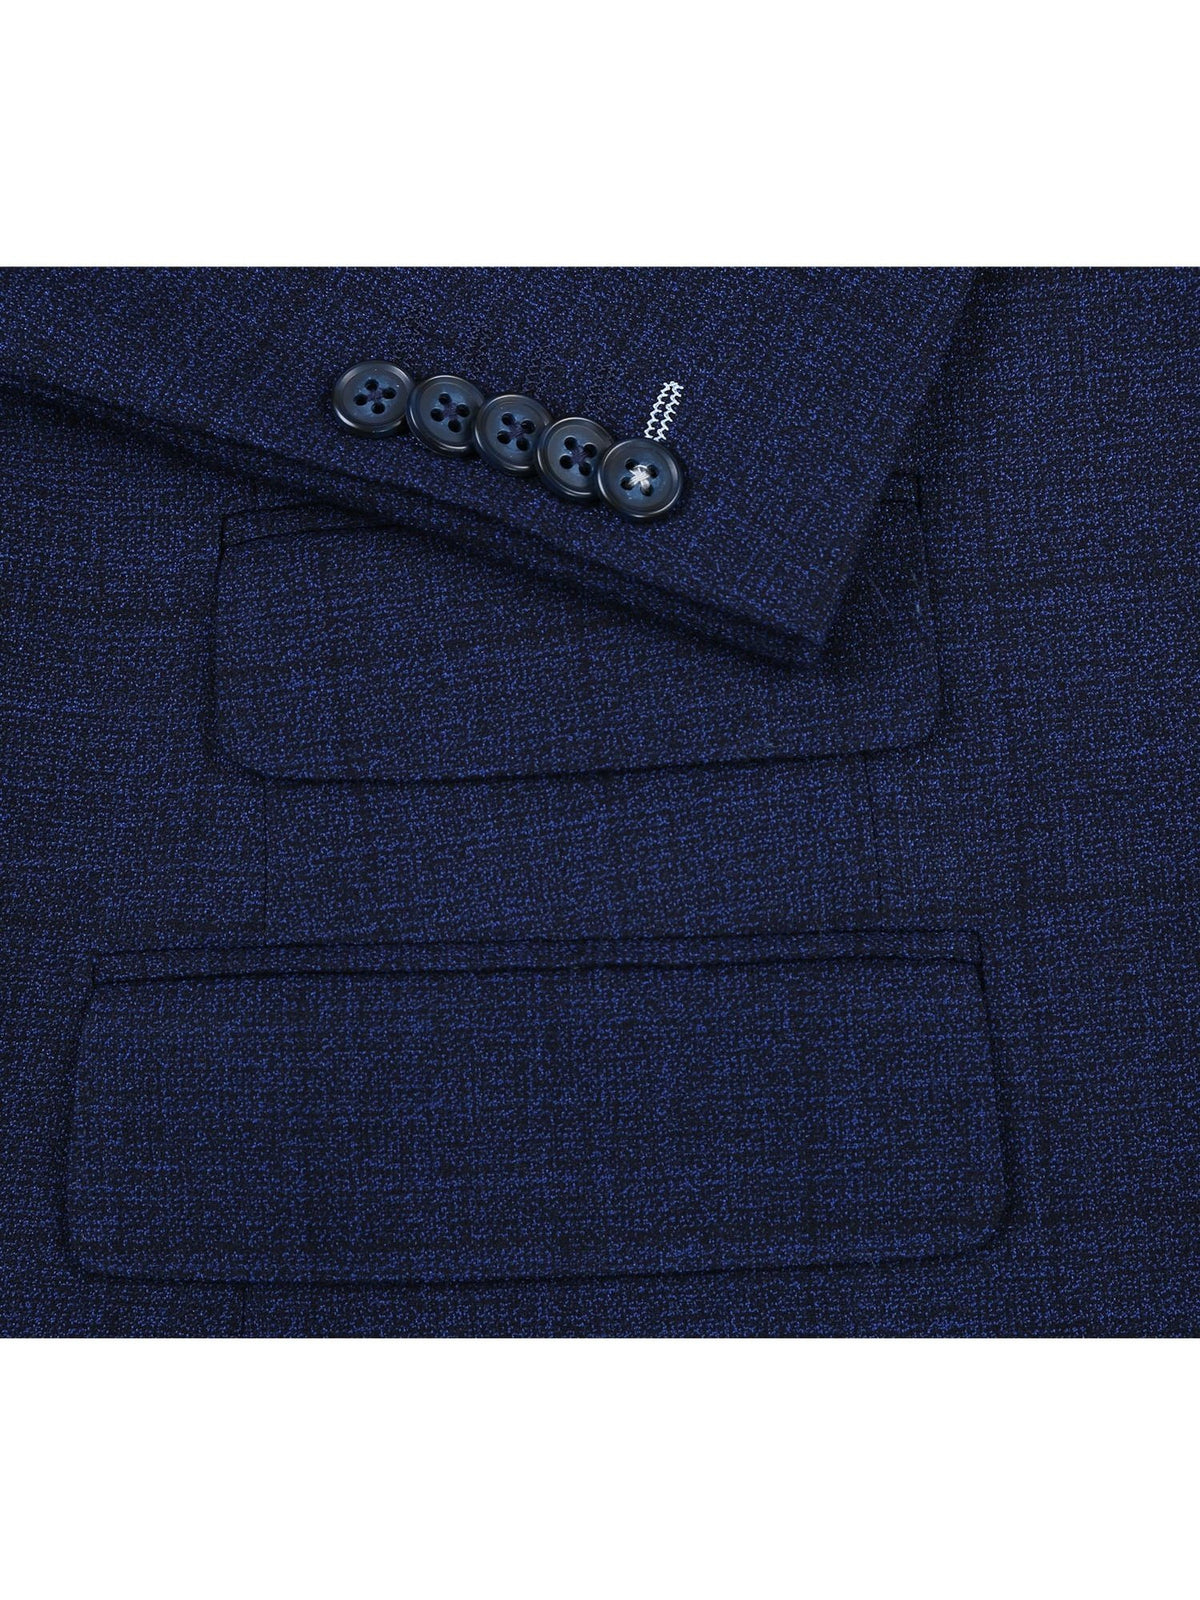 English Laundry Slim Fit Two button Blue Check Peak Lapel Suit